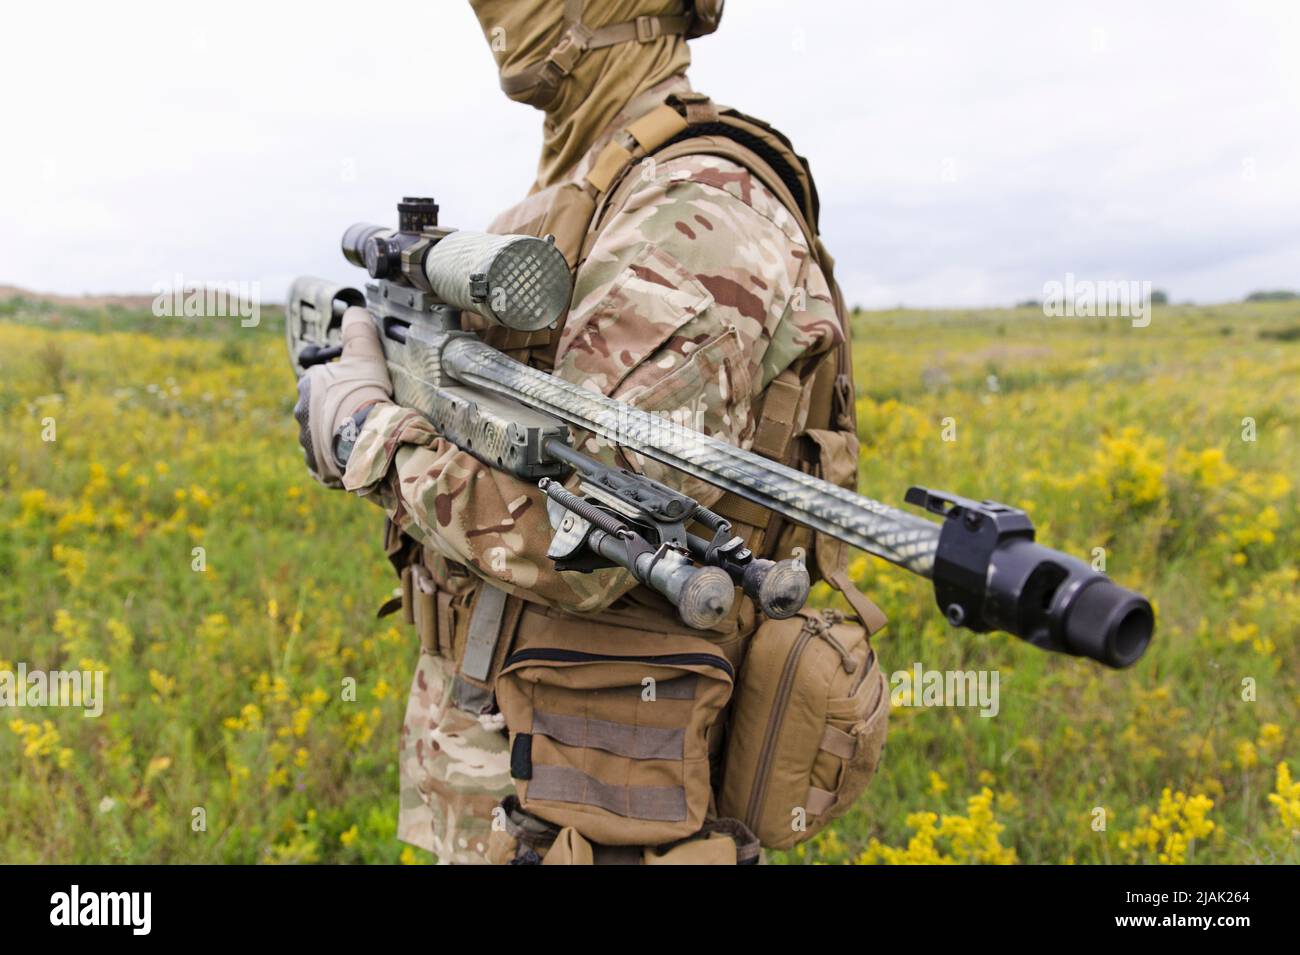 Soldat avec un fusil de sniper debout dans un champ vert en fleur. Banque D'Images